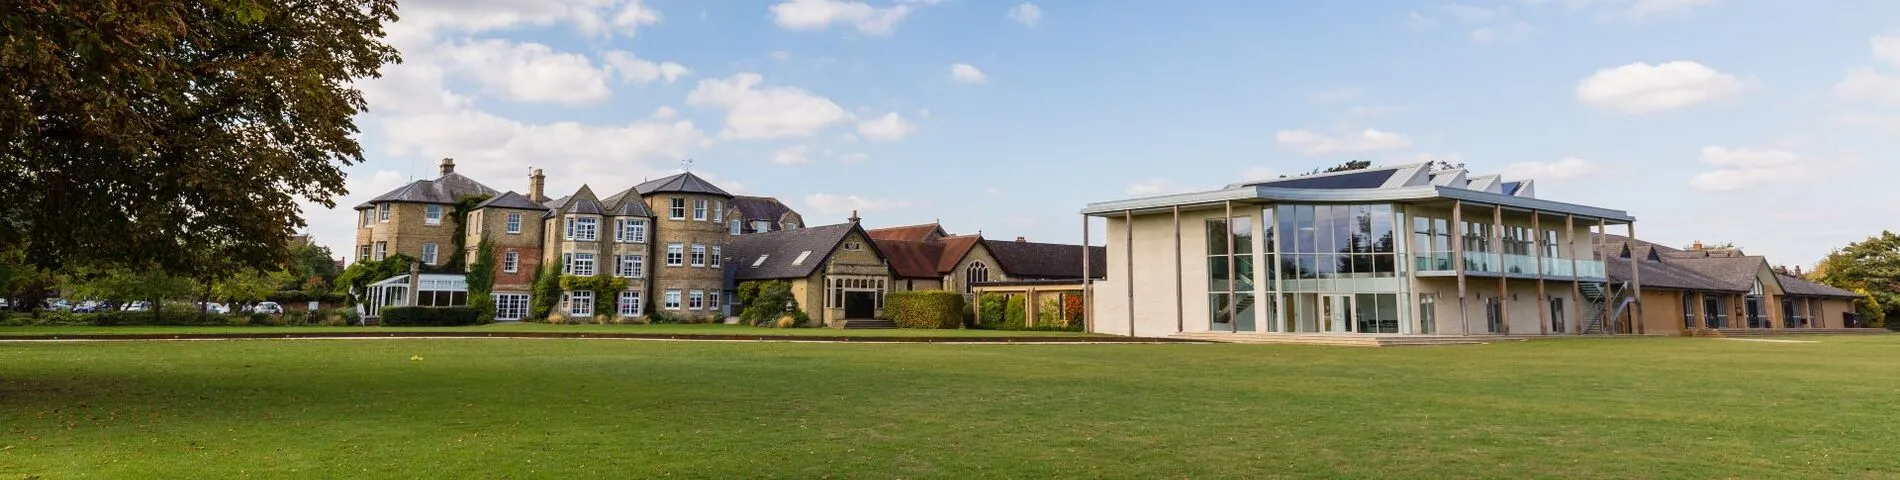 Oxford Spires Junior Centre - Summer Fields School bild 1